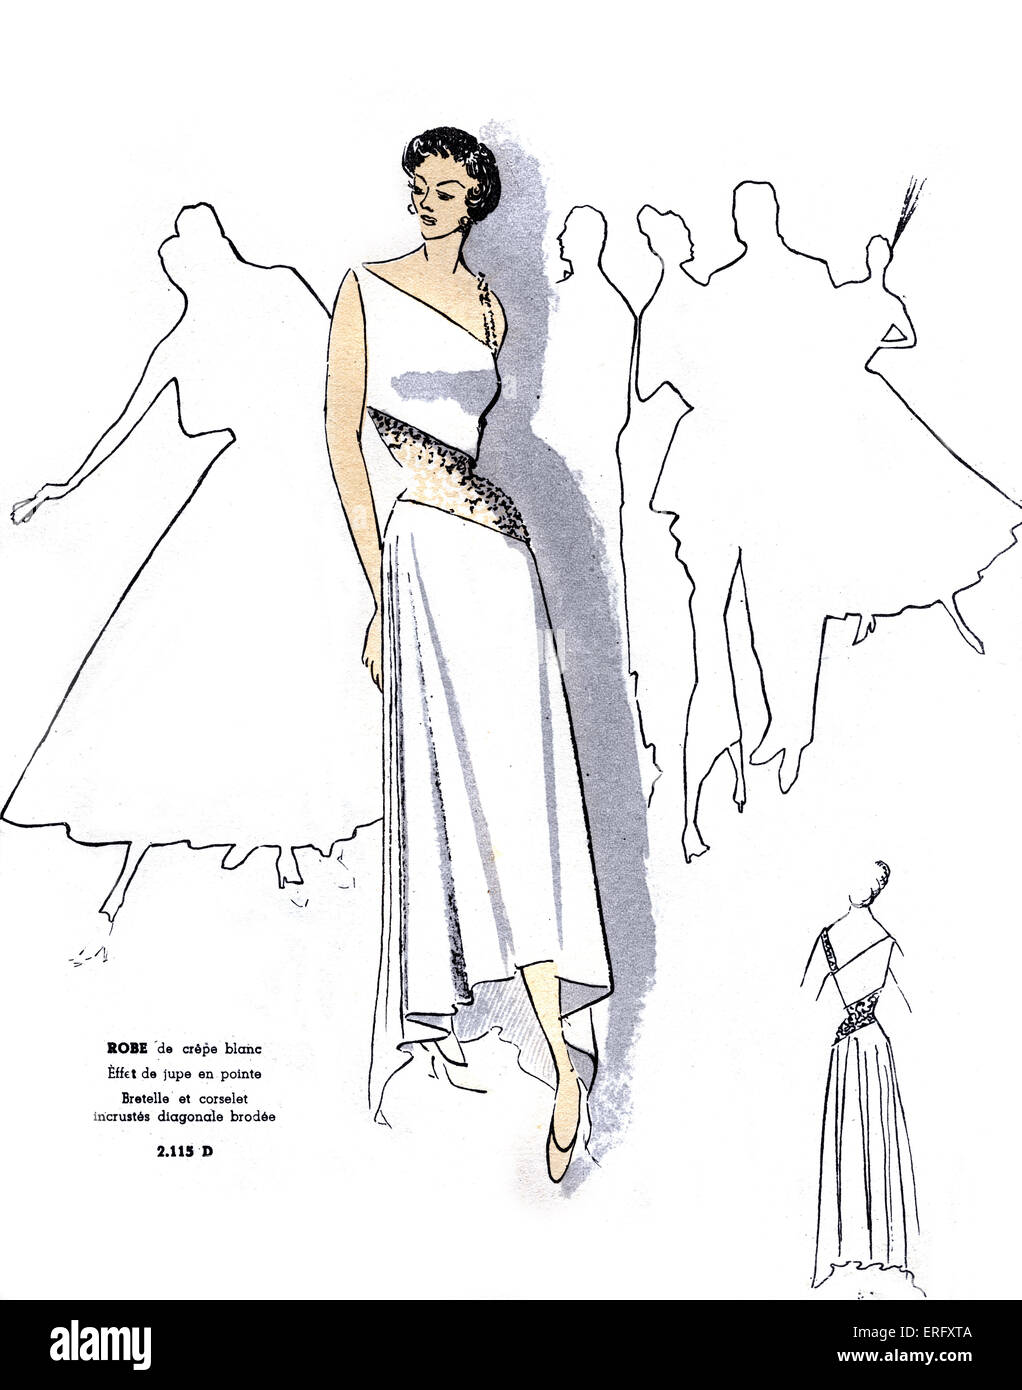 La moda francesa, crepé blanco vestido de noche de diseño/ Manto de crêpe blanc. Para fines del decenio de 1940. Correa y corselet inlayed con Foto de stock